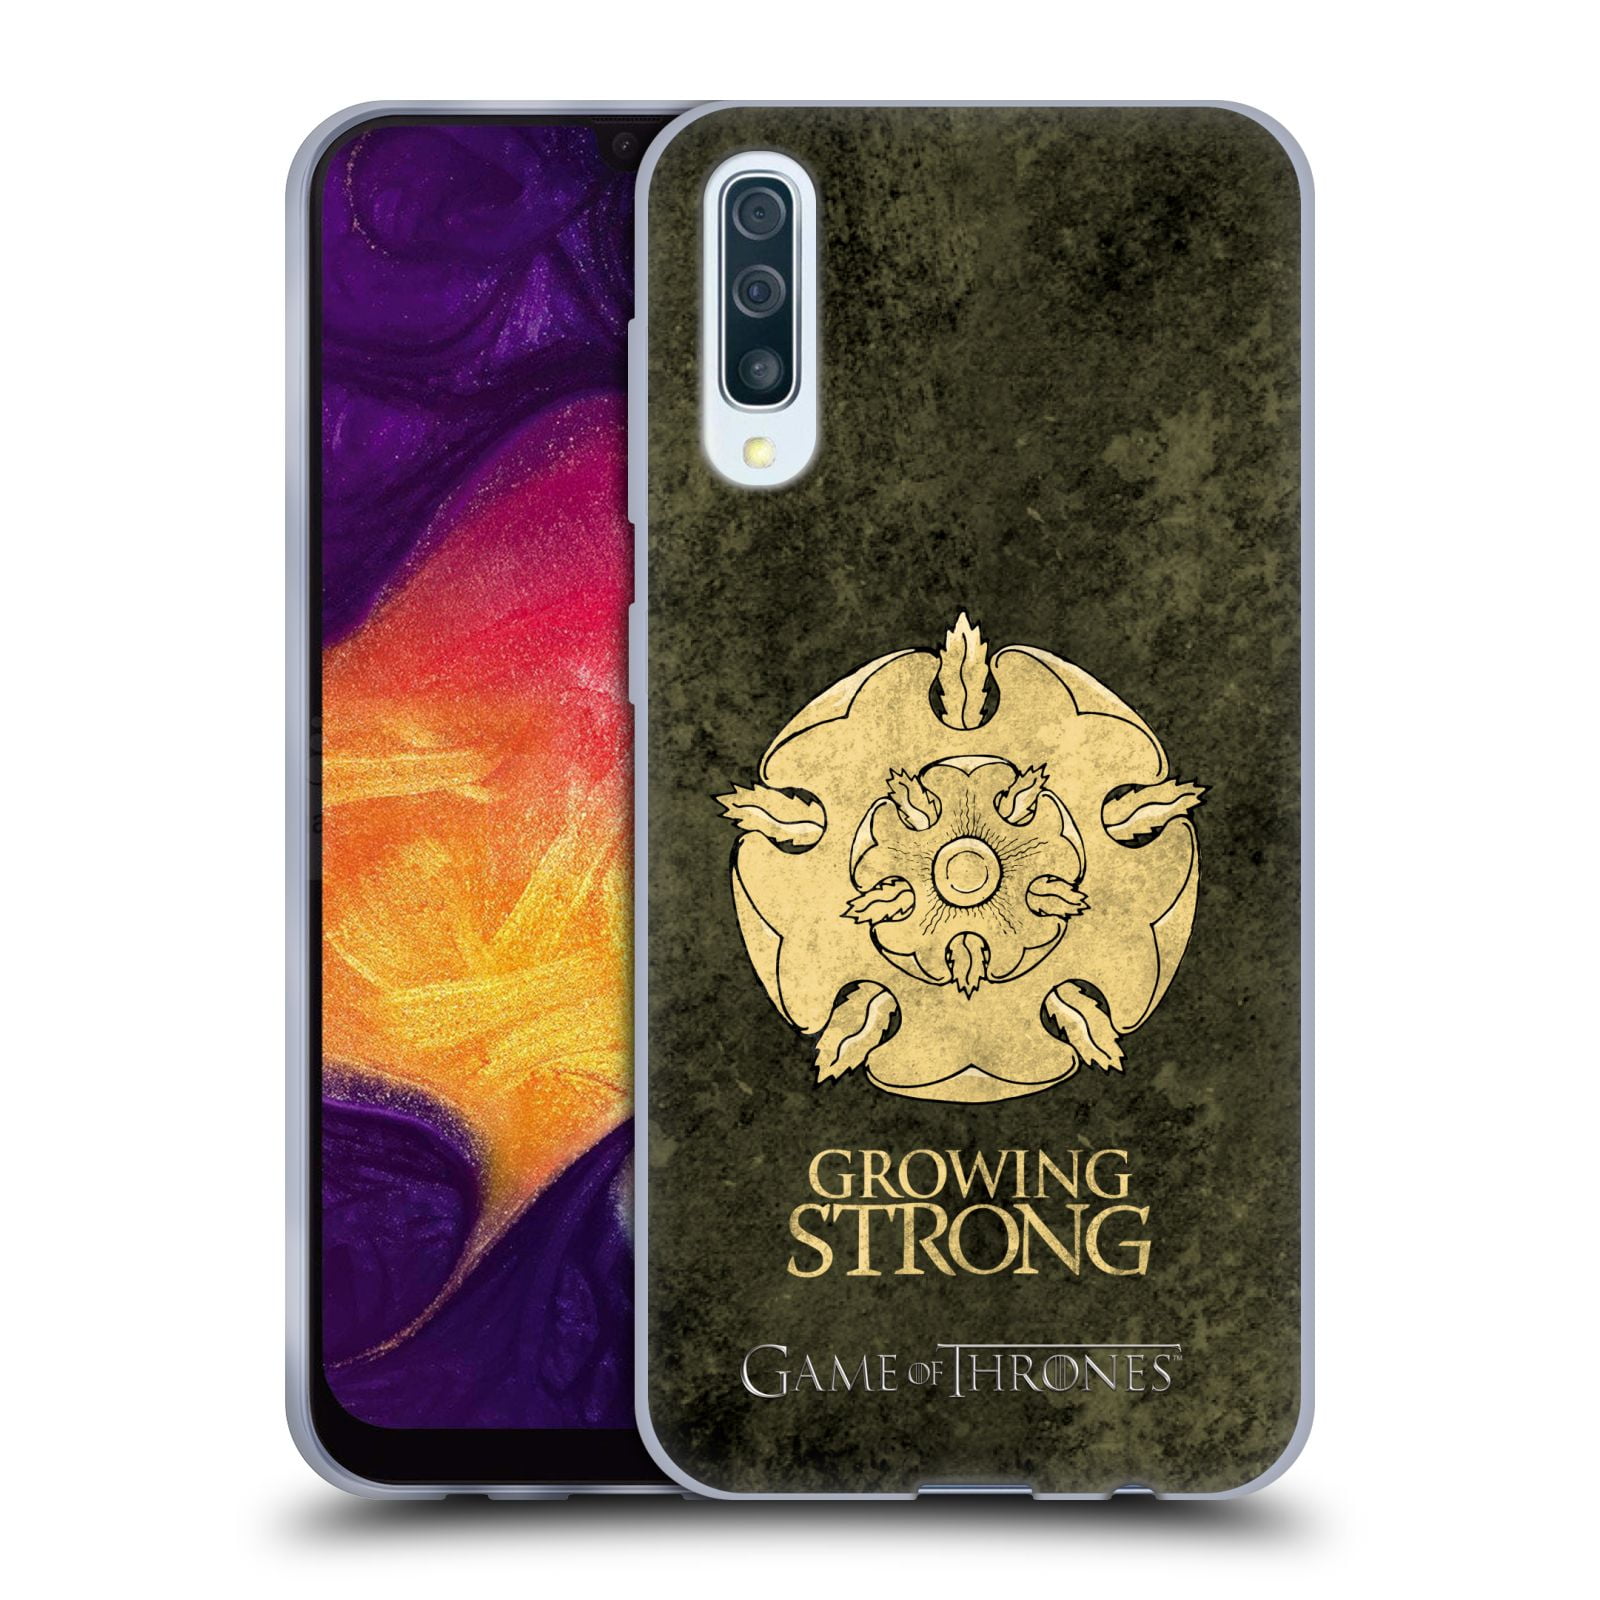 2019 Head Case Designs Licenciado Oficialmente HBO Game of Thrones Stark Sigilos metálicos Carcasa de Gel de Silicona Compatible con Samsung Galaxy A50/A30s